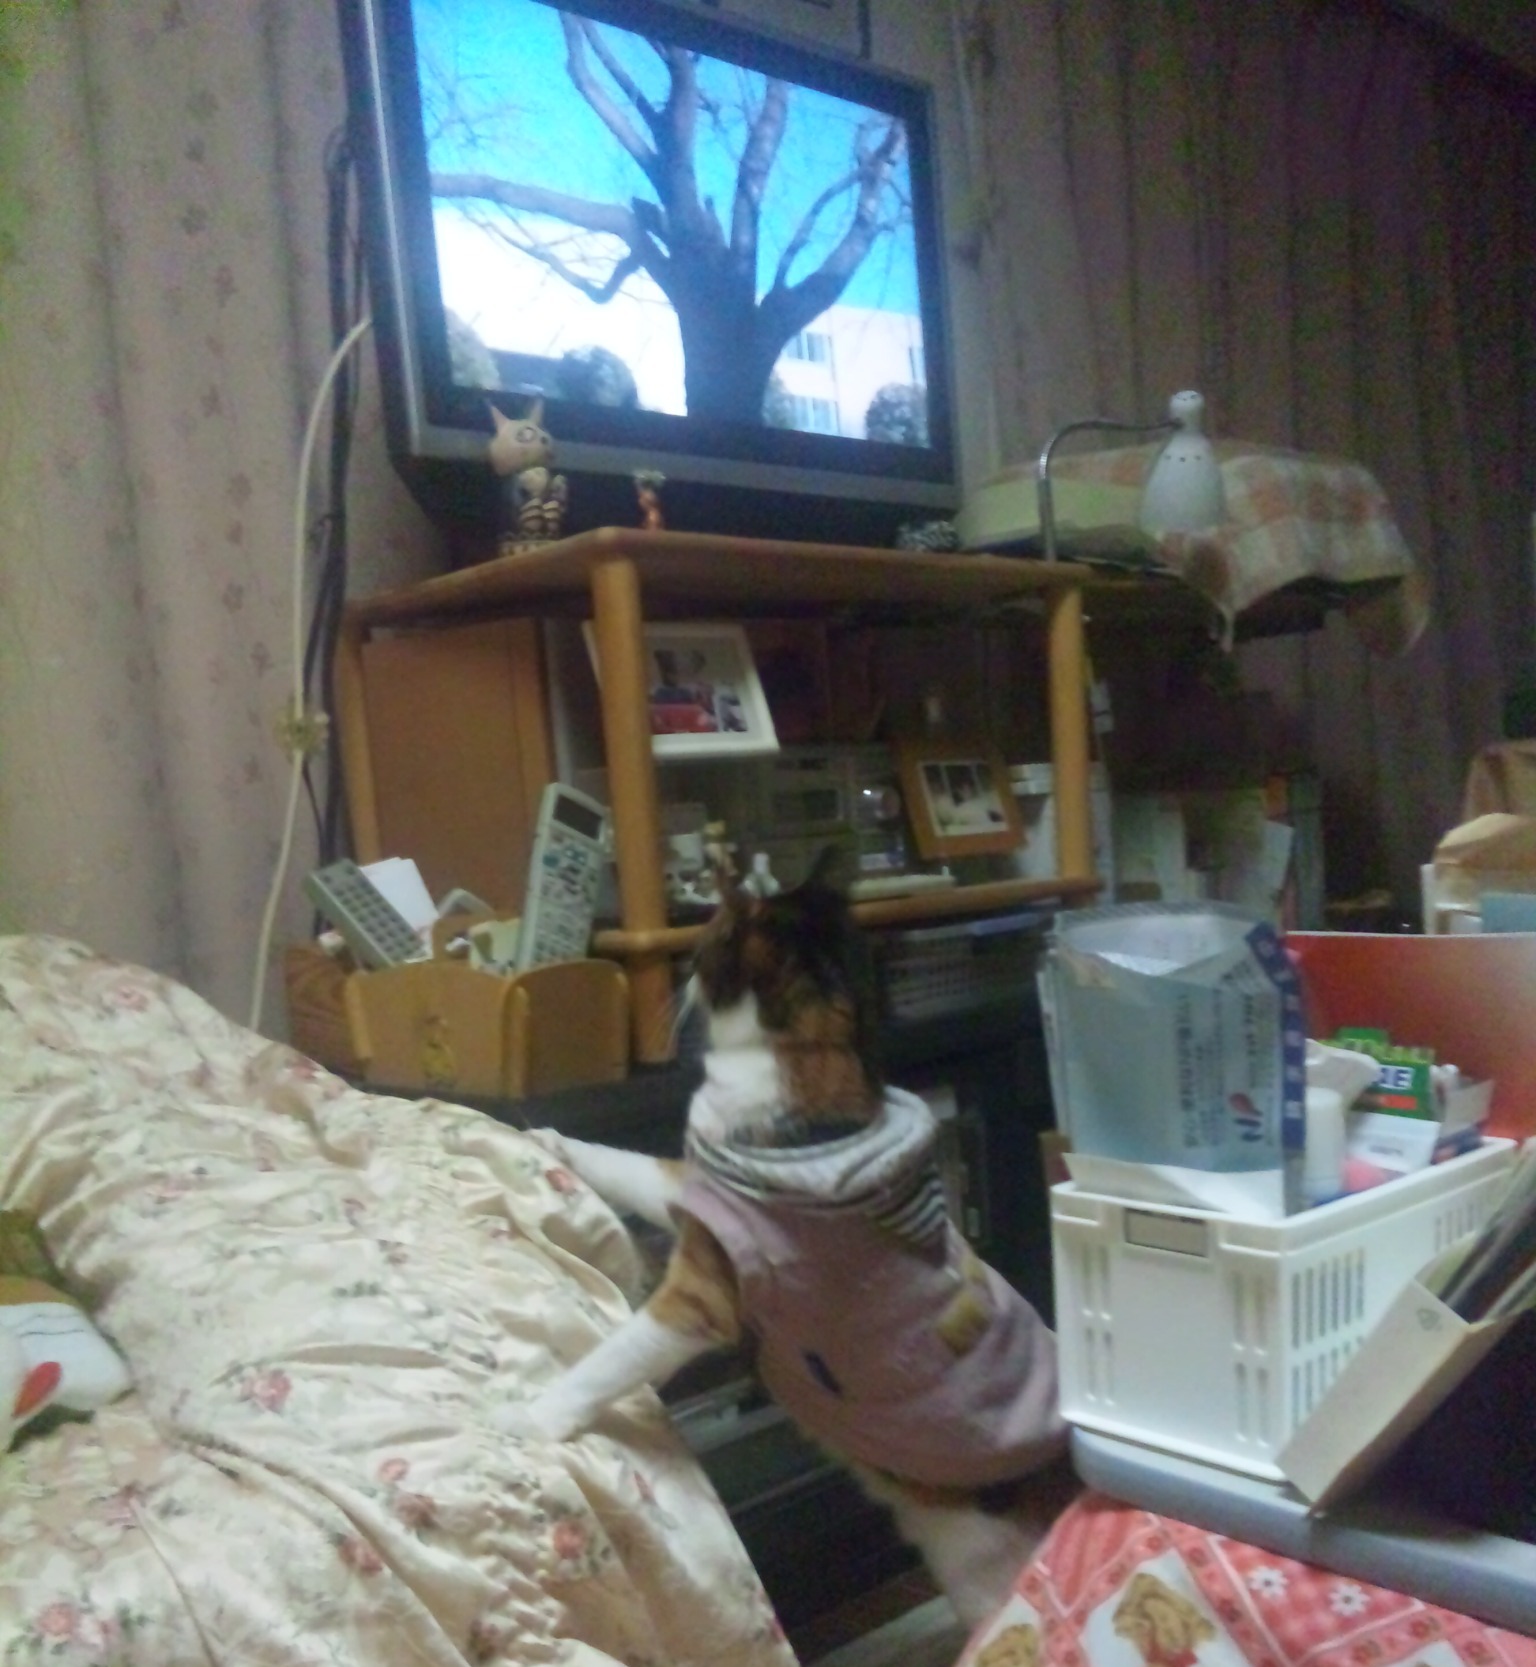 『のら暦＊ねこ休みネコ遊ビ＊』DVDに立ち上がって見入る猫の写真from中島さん_f0006713_0182695.jpg